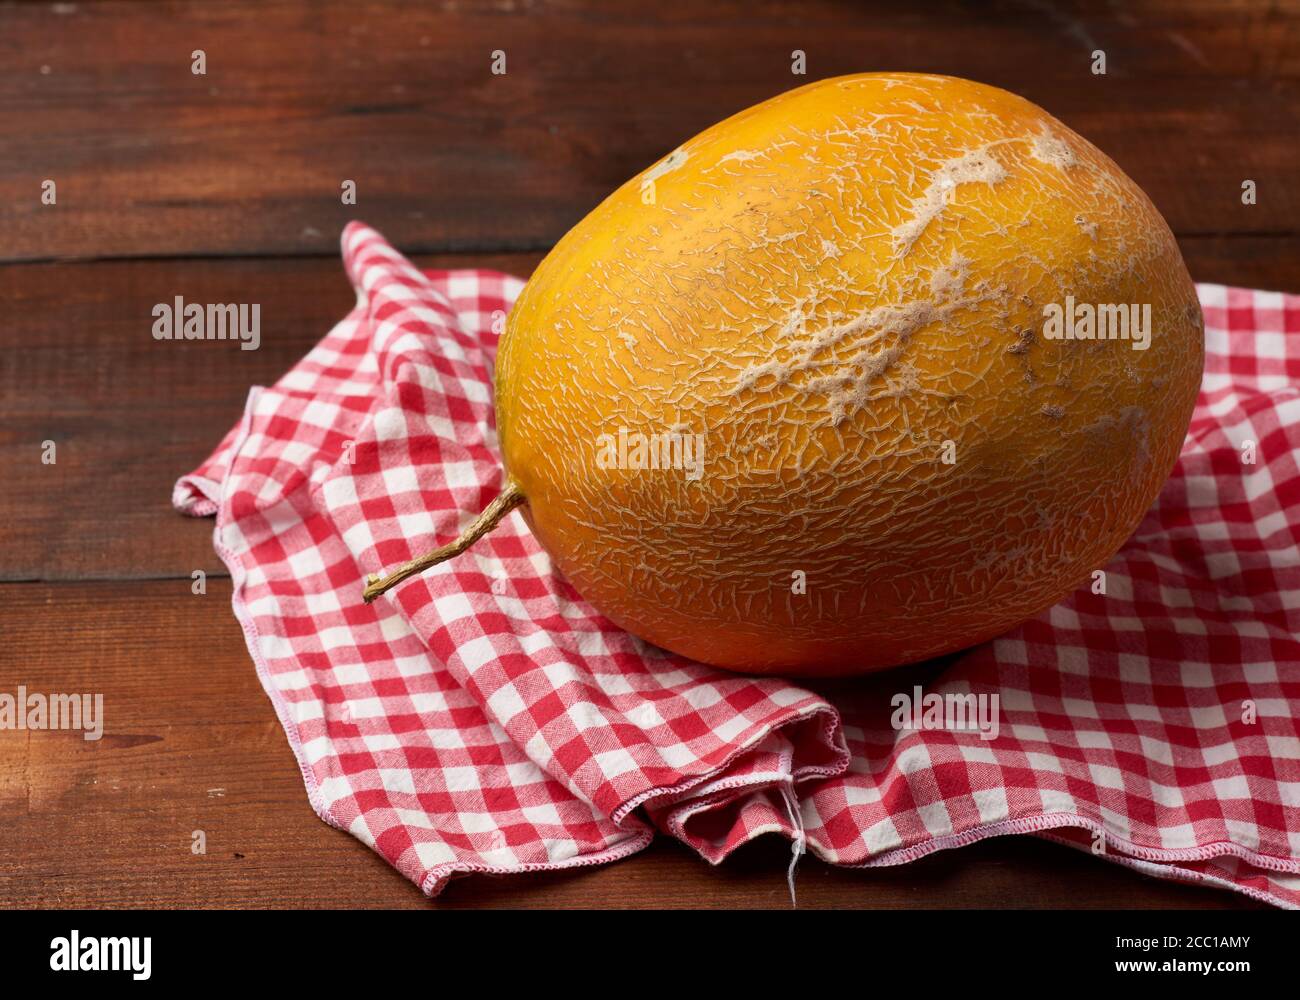 melone tondeggiante giallo maturo su fondo di legno marrone, primo piano Foto Stock